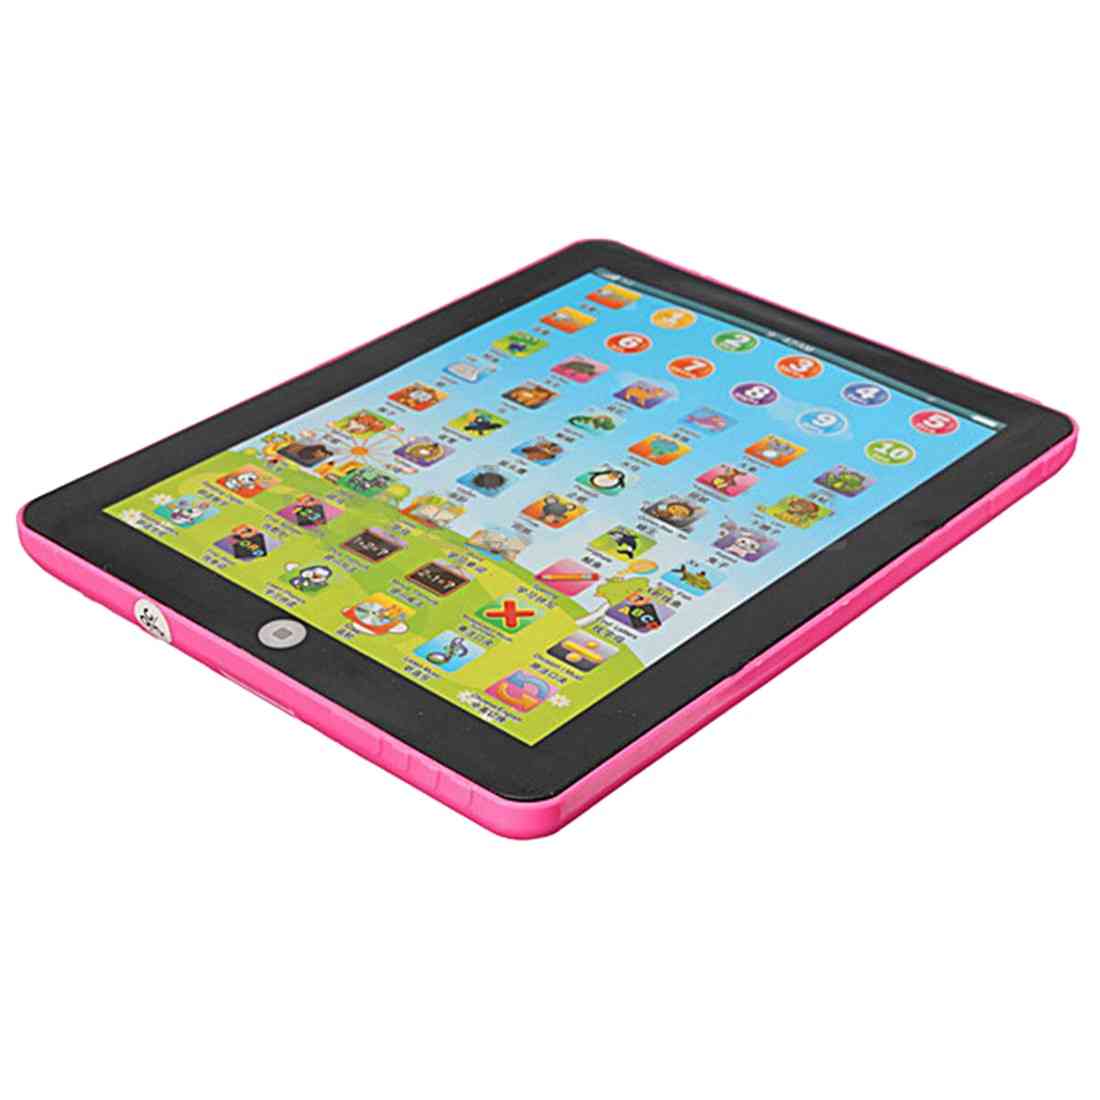 Podkładka pod tablet dla dzieci - komputerowe zabawki edukacyjne